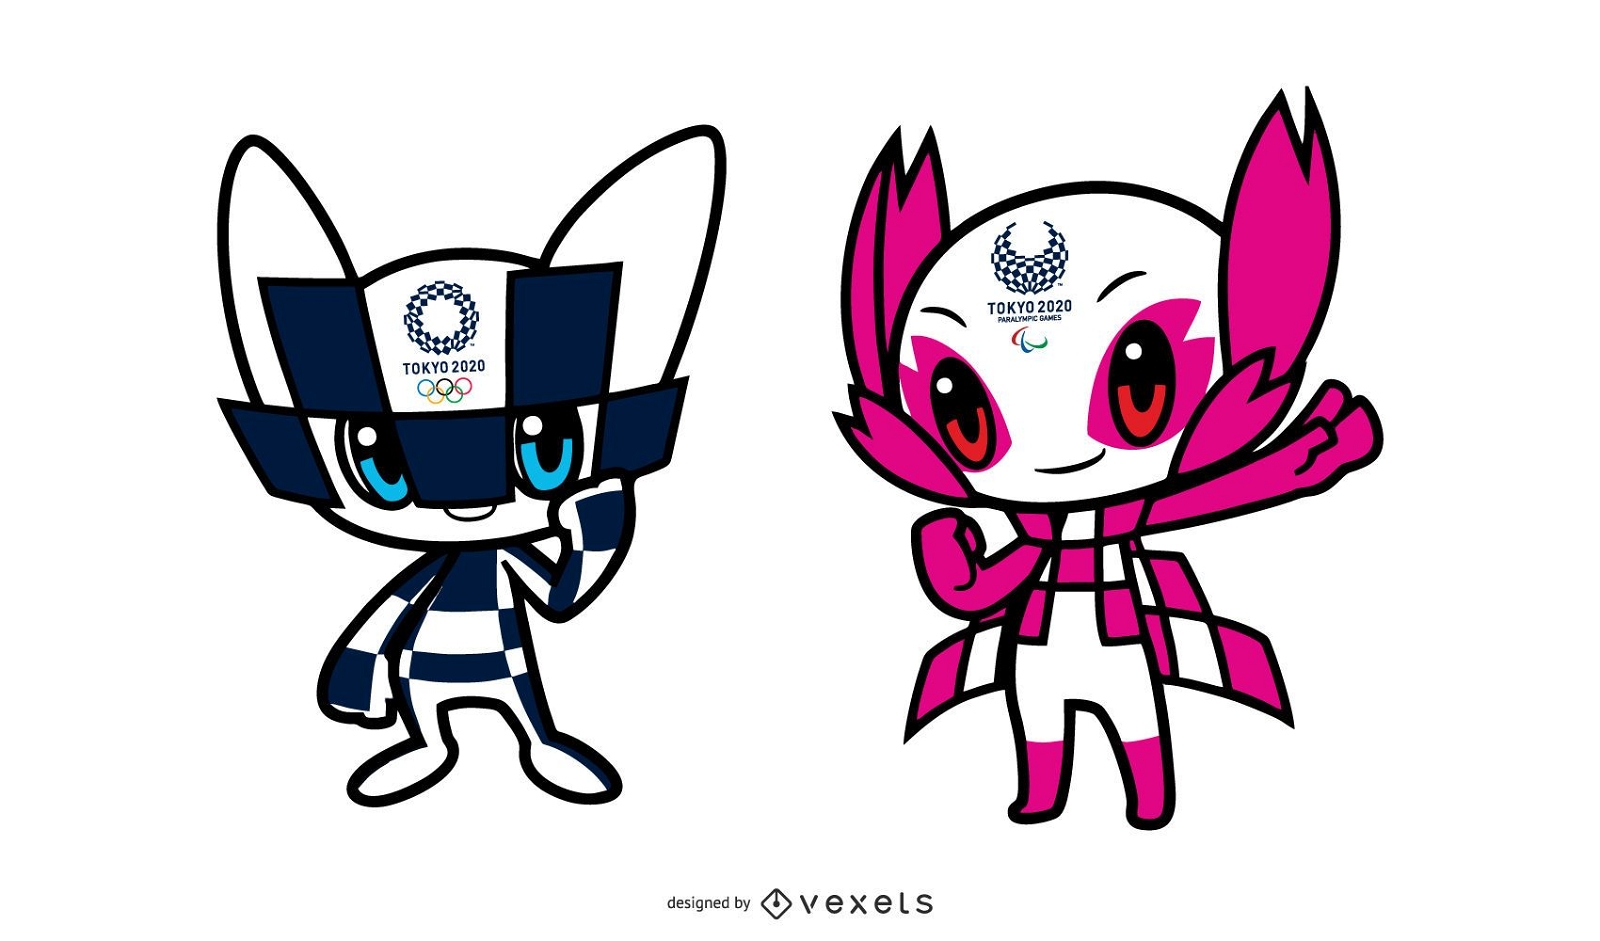 Dise?o de personajes de la mascota de los Juegos Ol?mpicos de Tokio 2020